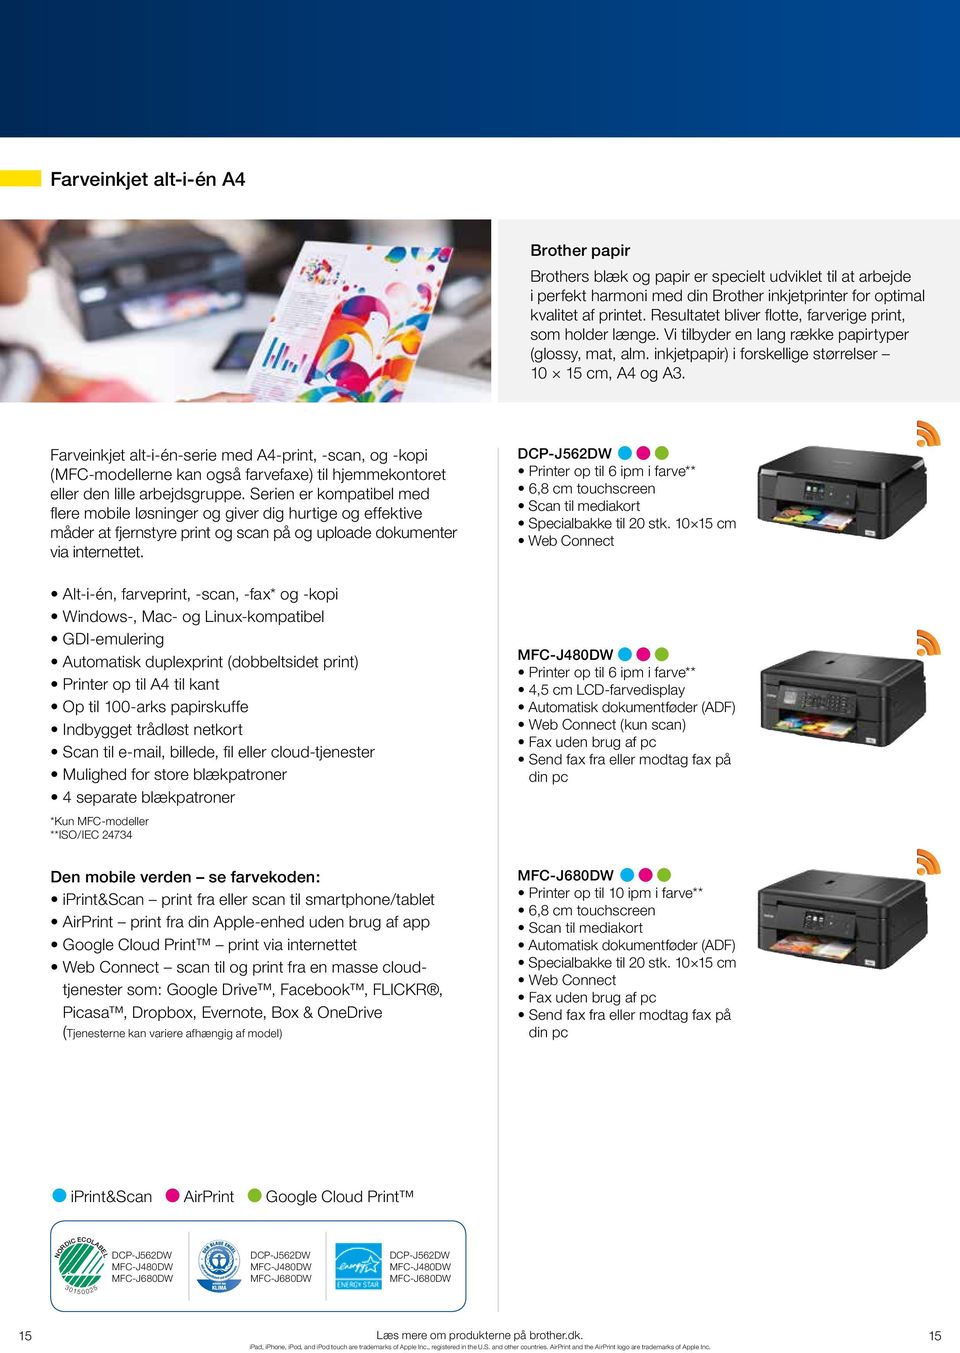 Farveinkjet alt-i-én-serie med A4-print, -scan, og -kopi (MFC-modellerne kan også farvefaxe) til hjemmekontoret eller den lille arbejdsgruppe.